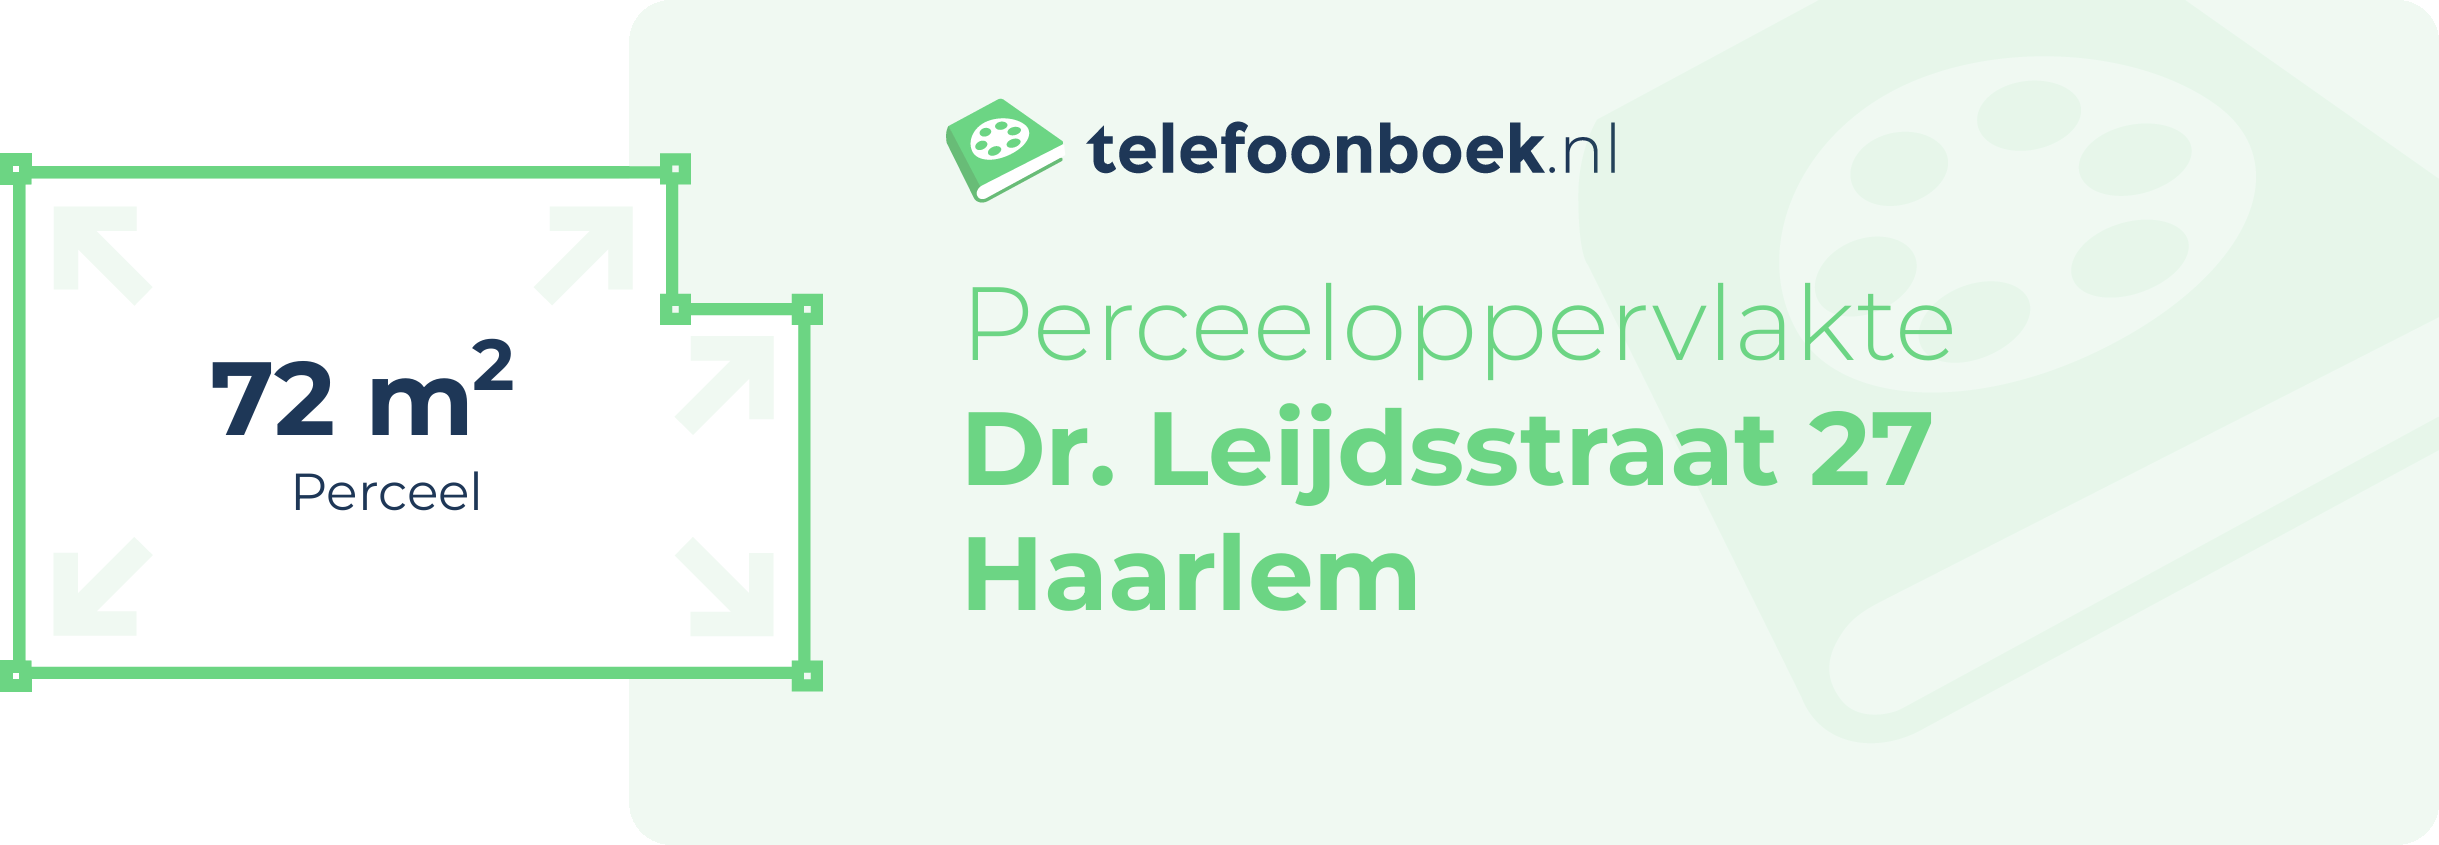 Perceeloppervlakte Dr. Leijdsstraat 27 Haarlem